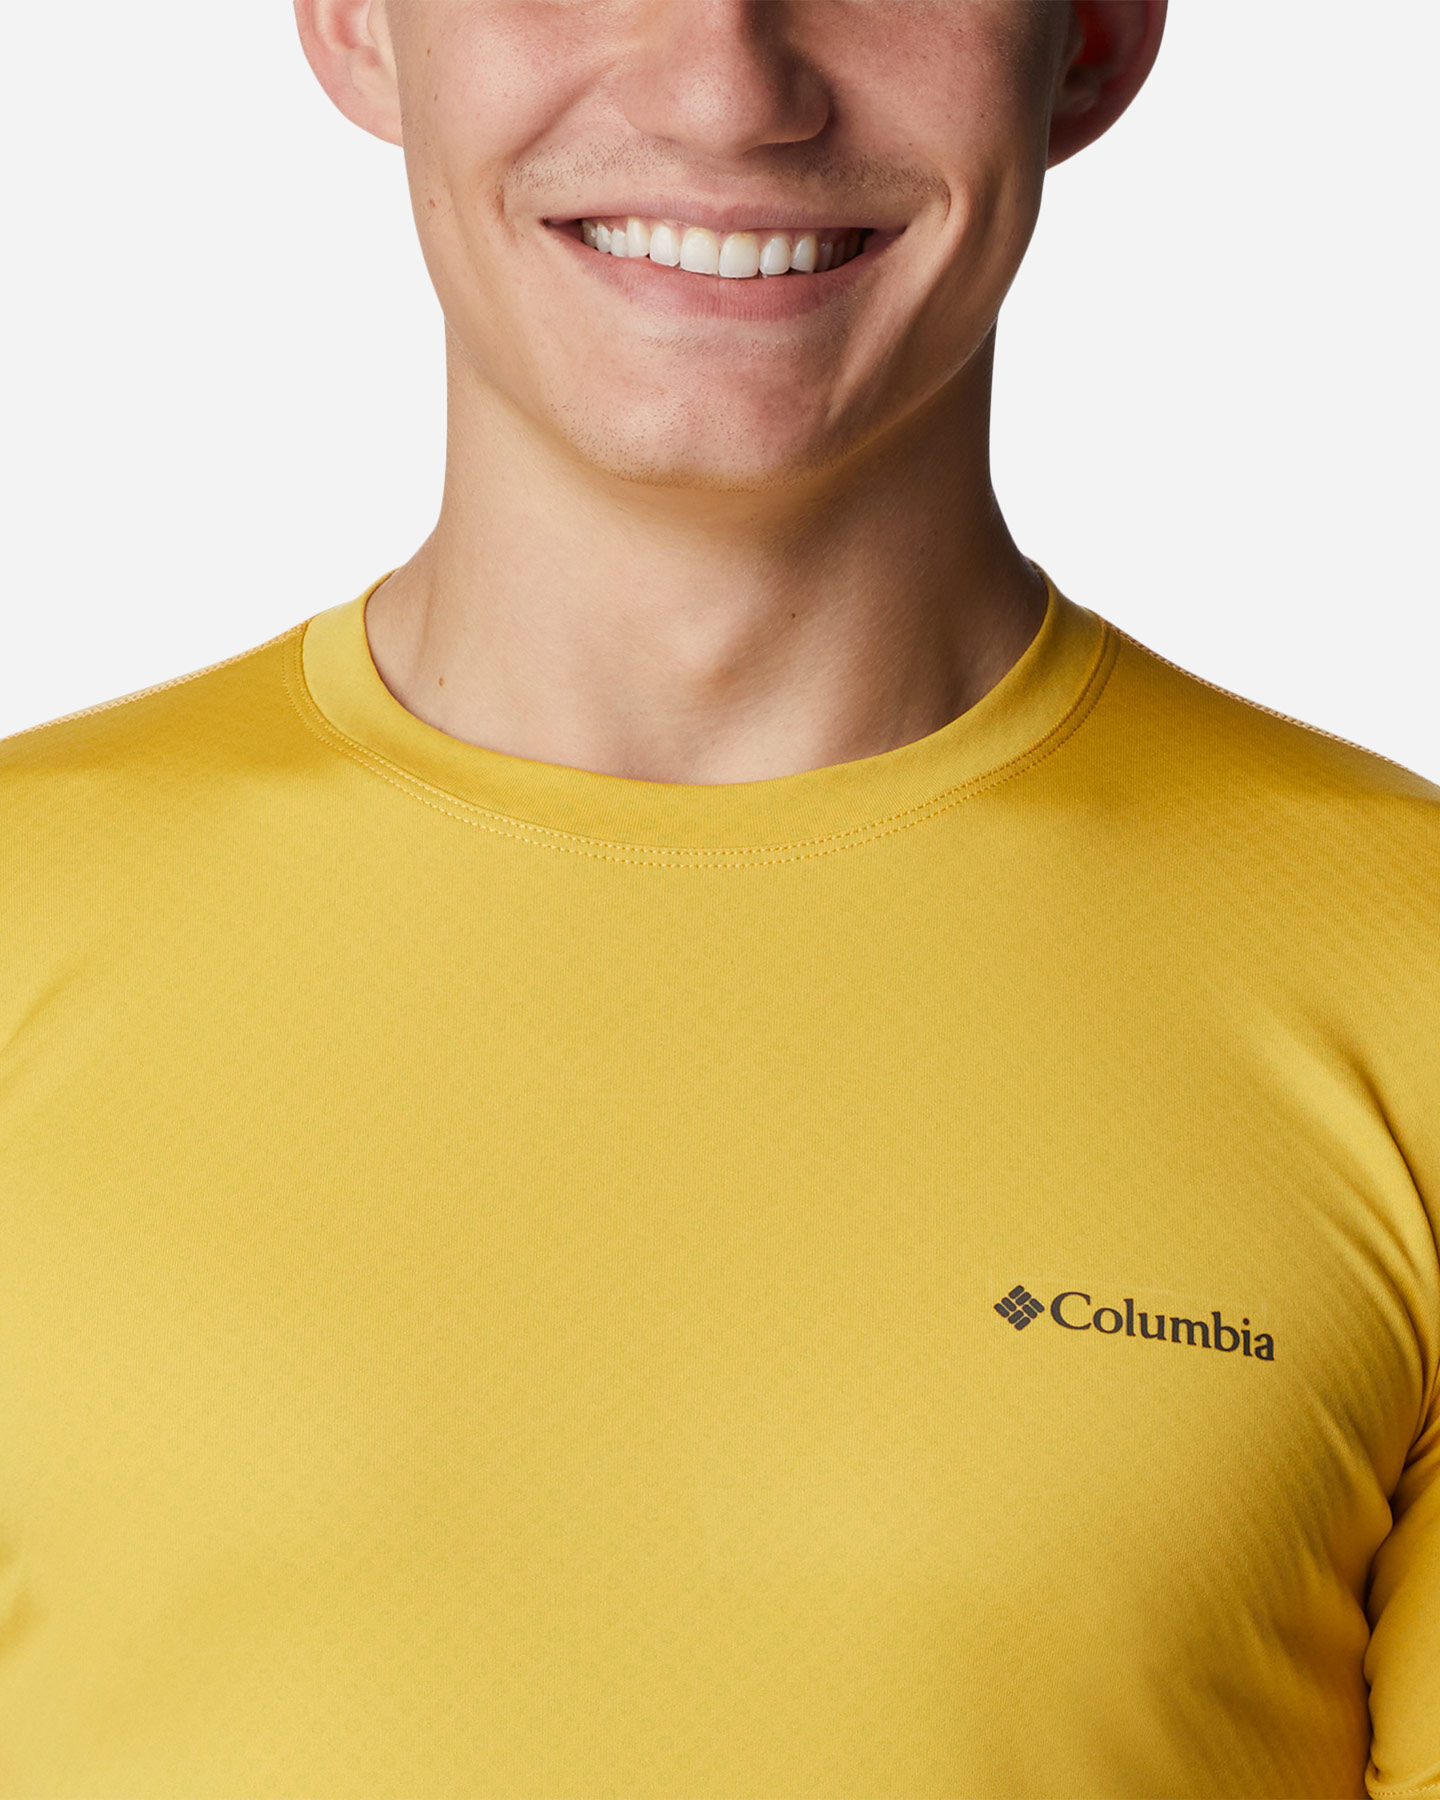  T-Shirt COLUMBIA ZERO RULES M S5552718 scatto 3